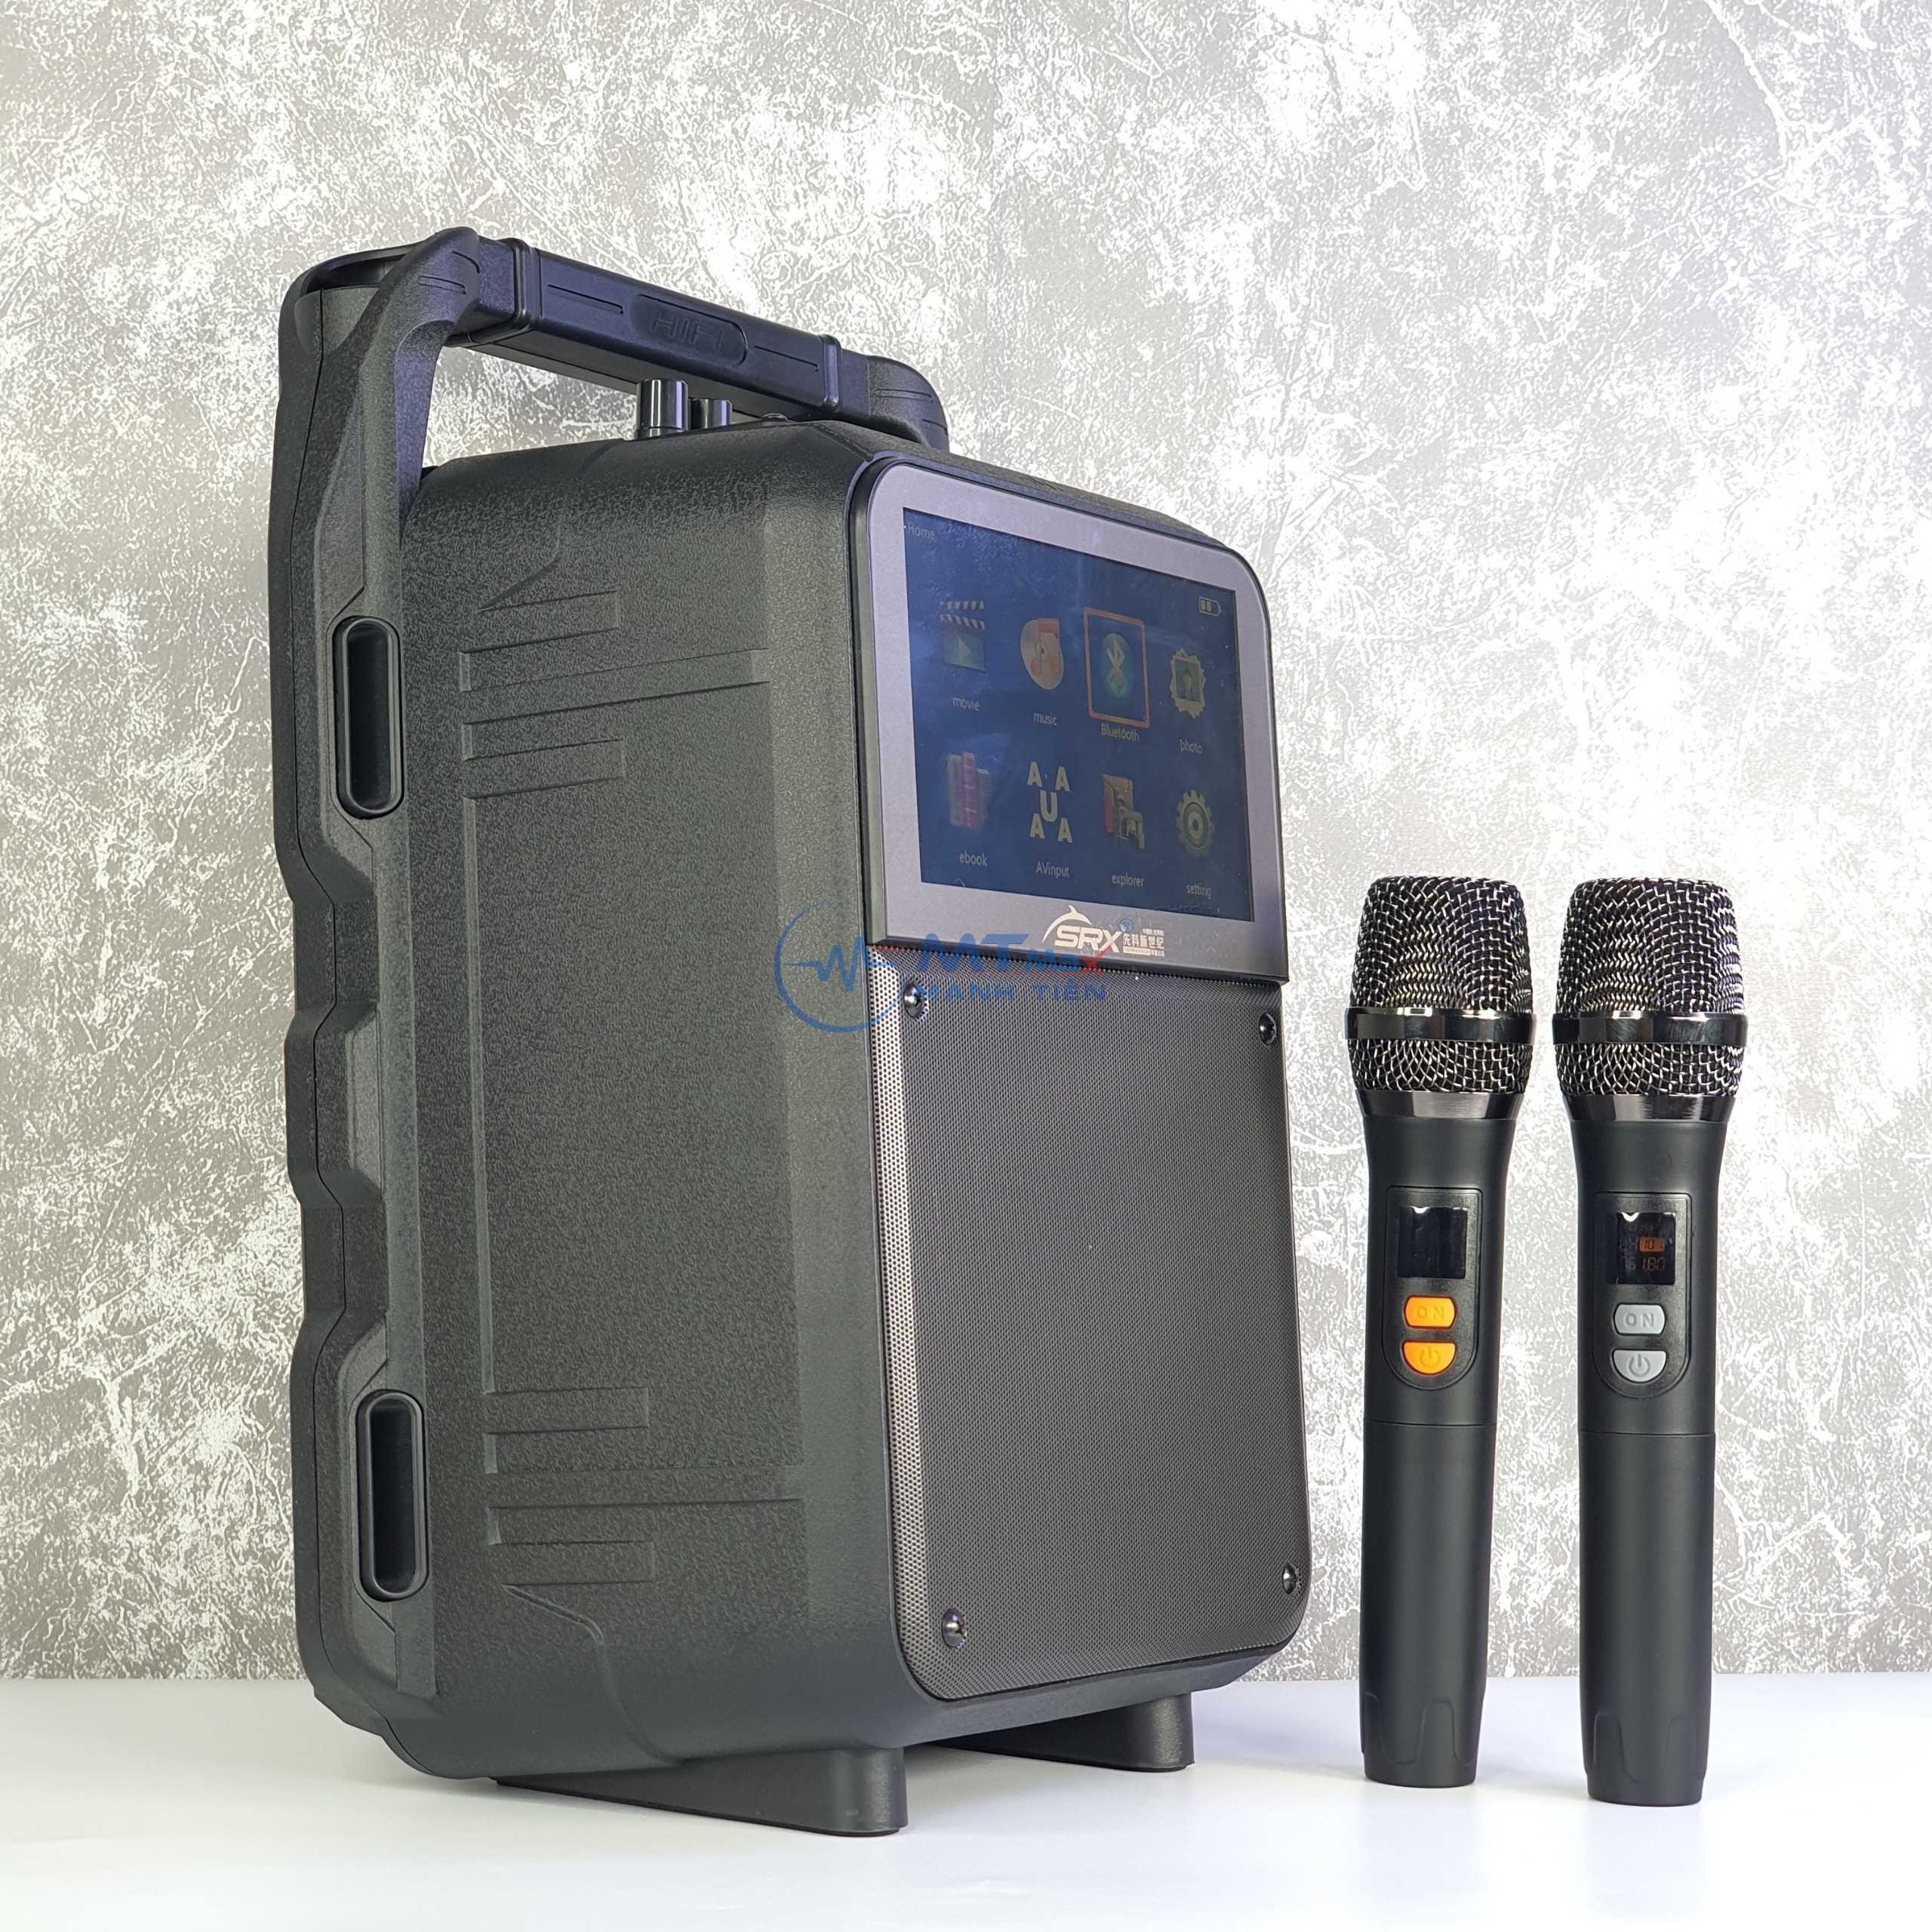 Loa Màn Hình Karaoke K80 - Pin 3000mAh Kèm 2 Micro Âm Thanh Sống Động, Màn Hình 7 Inch Hình Ảnh Sắc Nét, Chi Tiết Và Sống Động